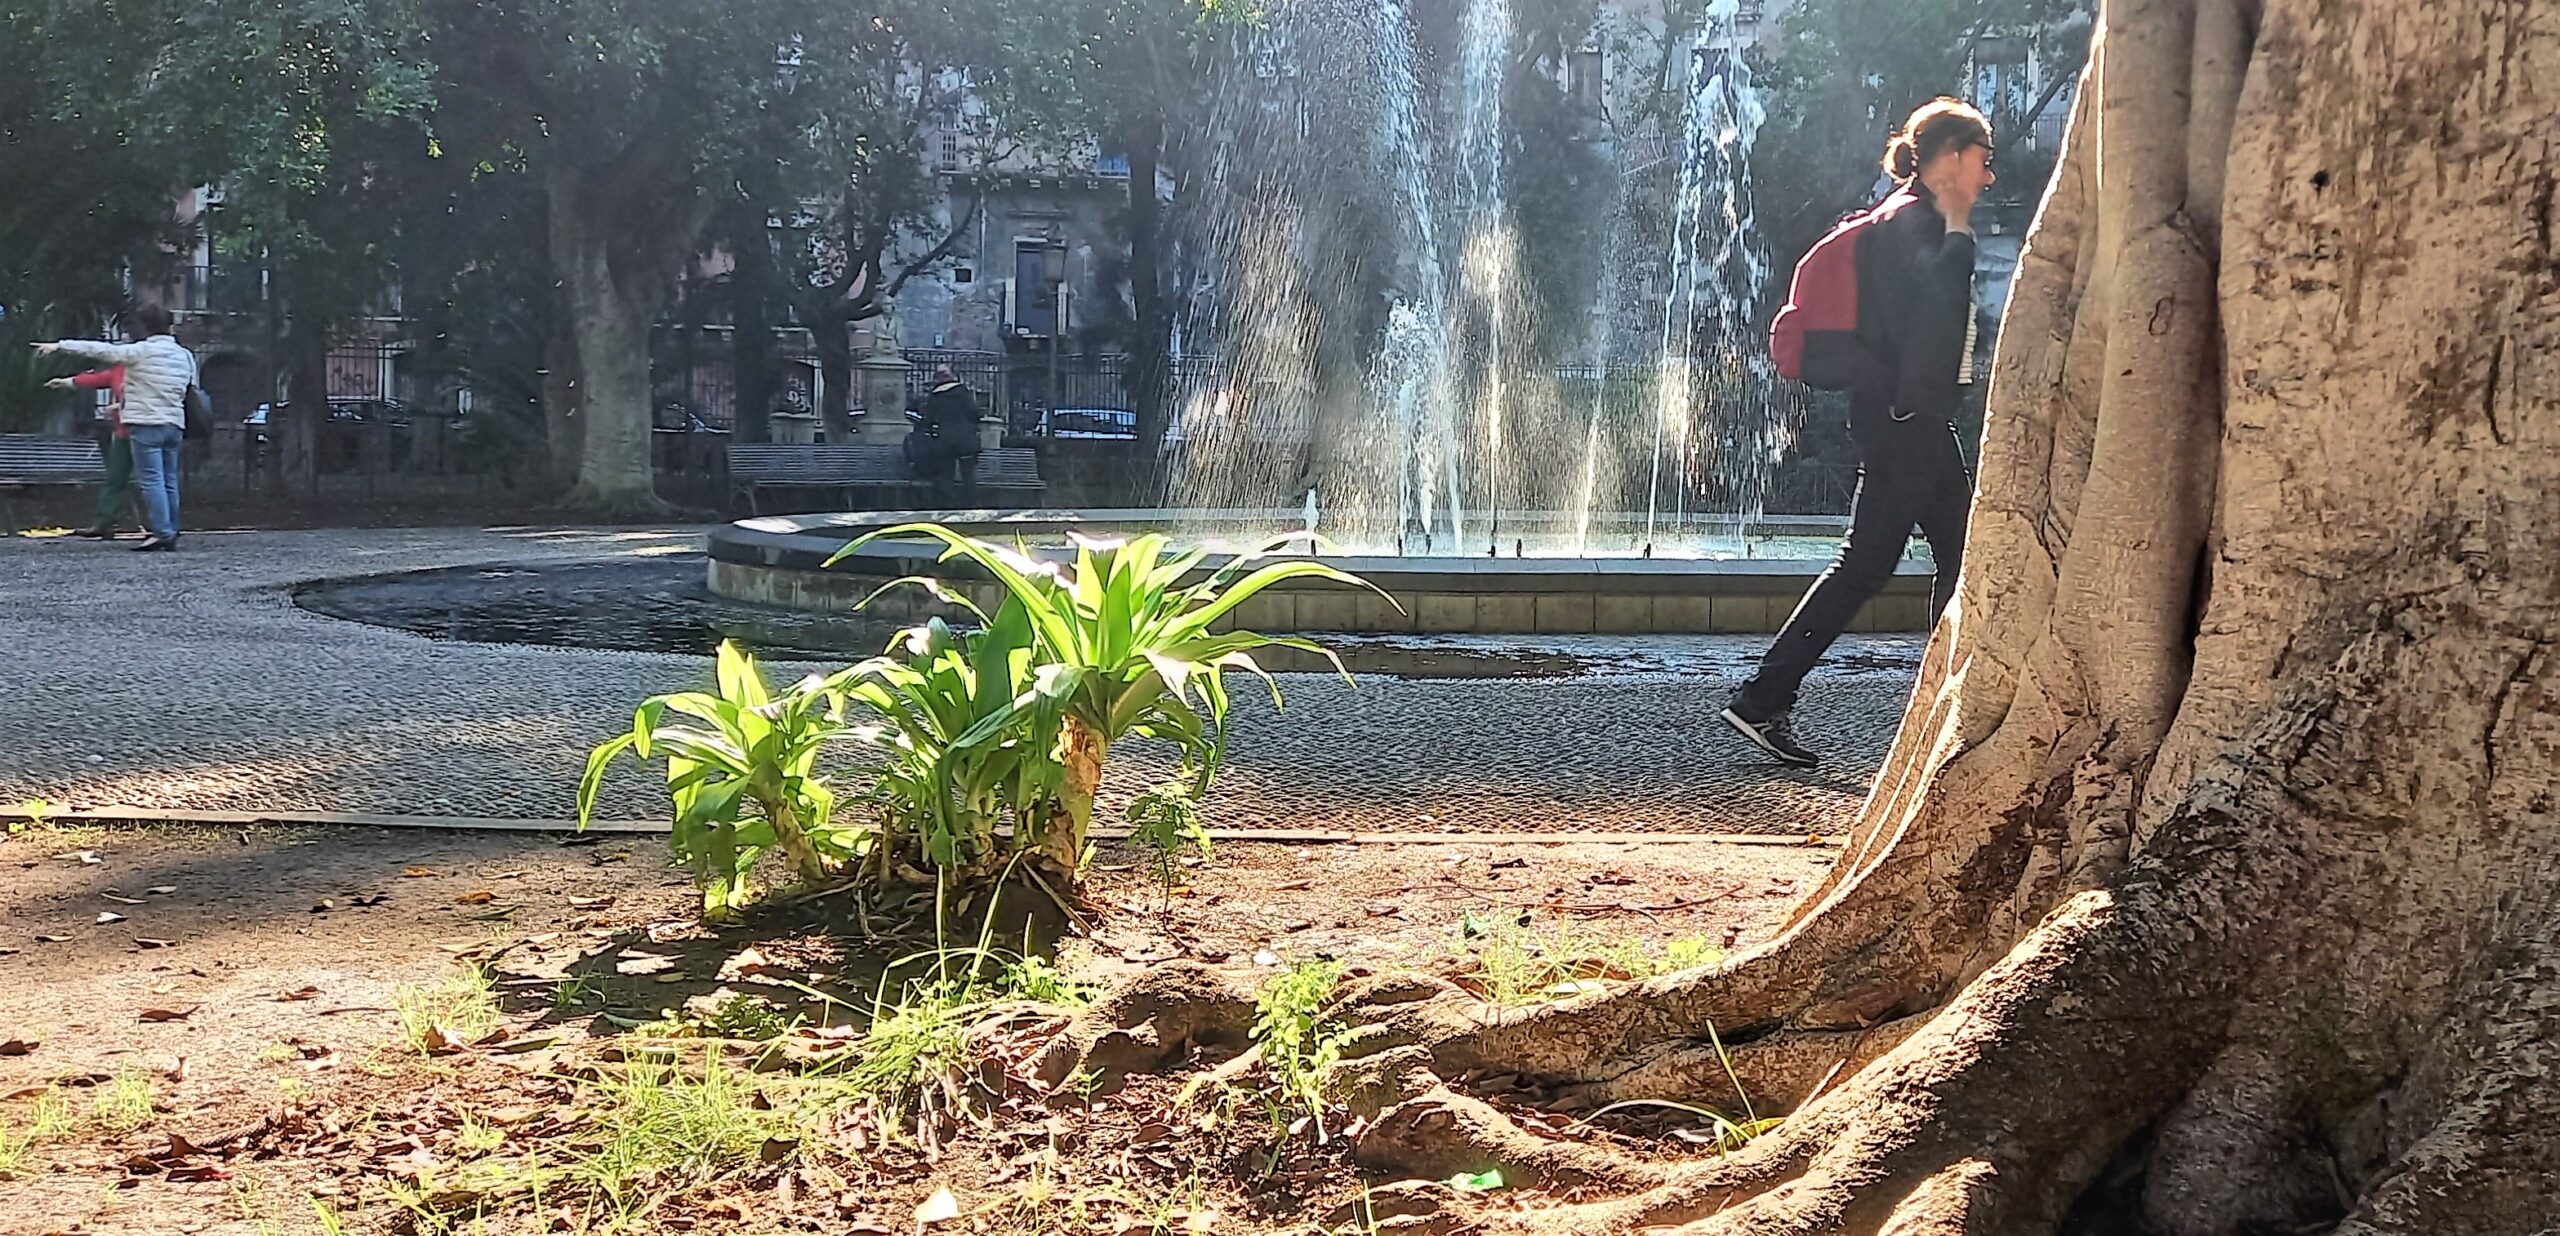 villa pacini catania visionaria 1mqdb verde urbano acqua potabile fontane ristoro del sentire sicily needs love